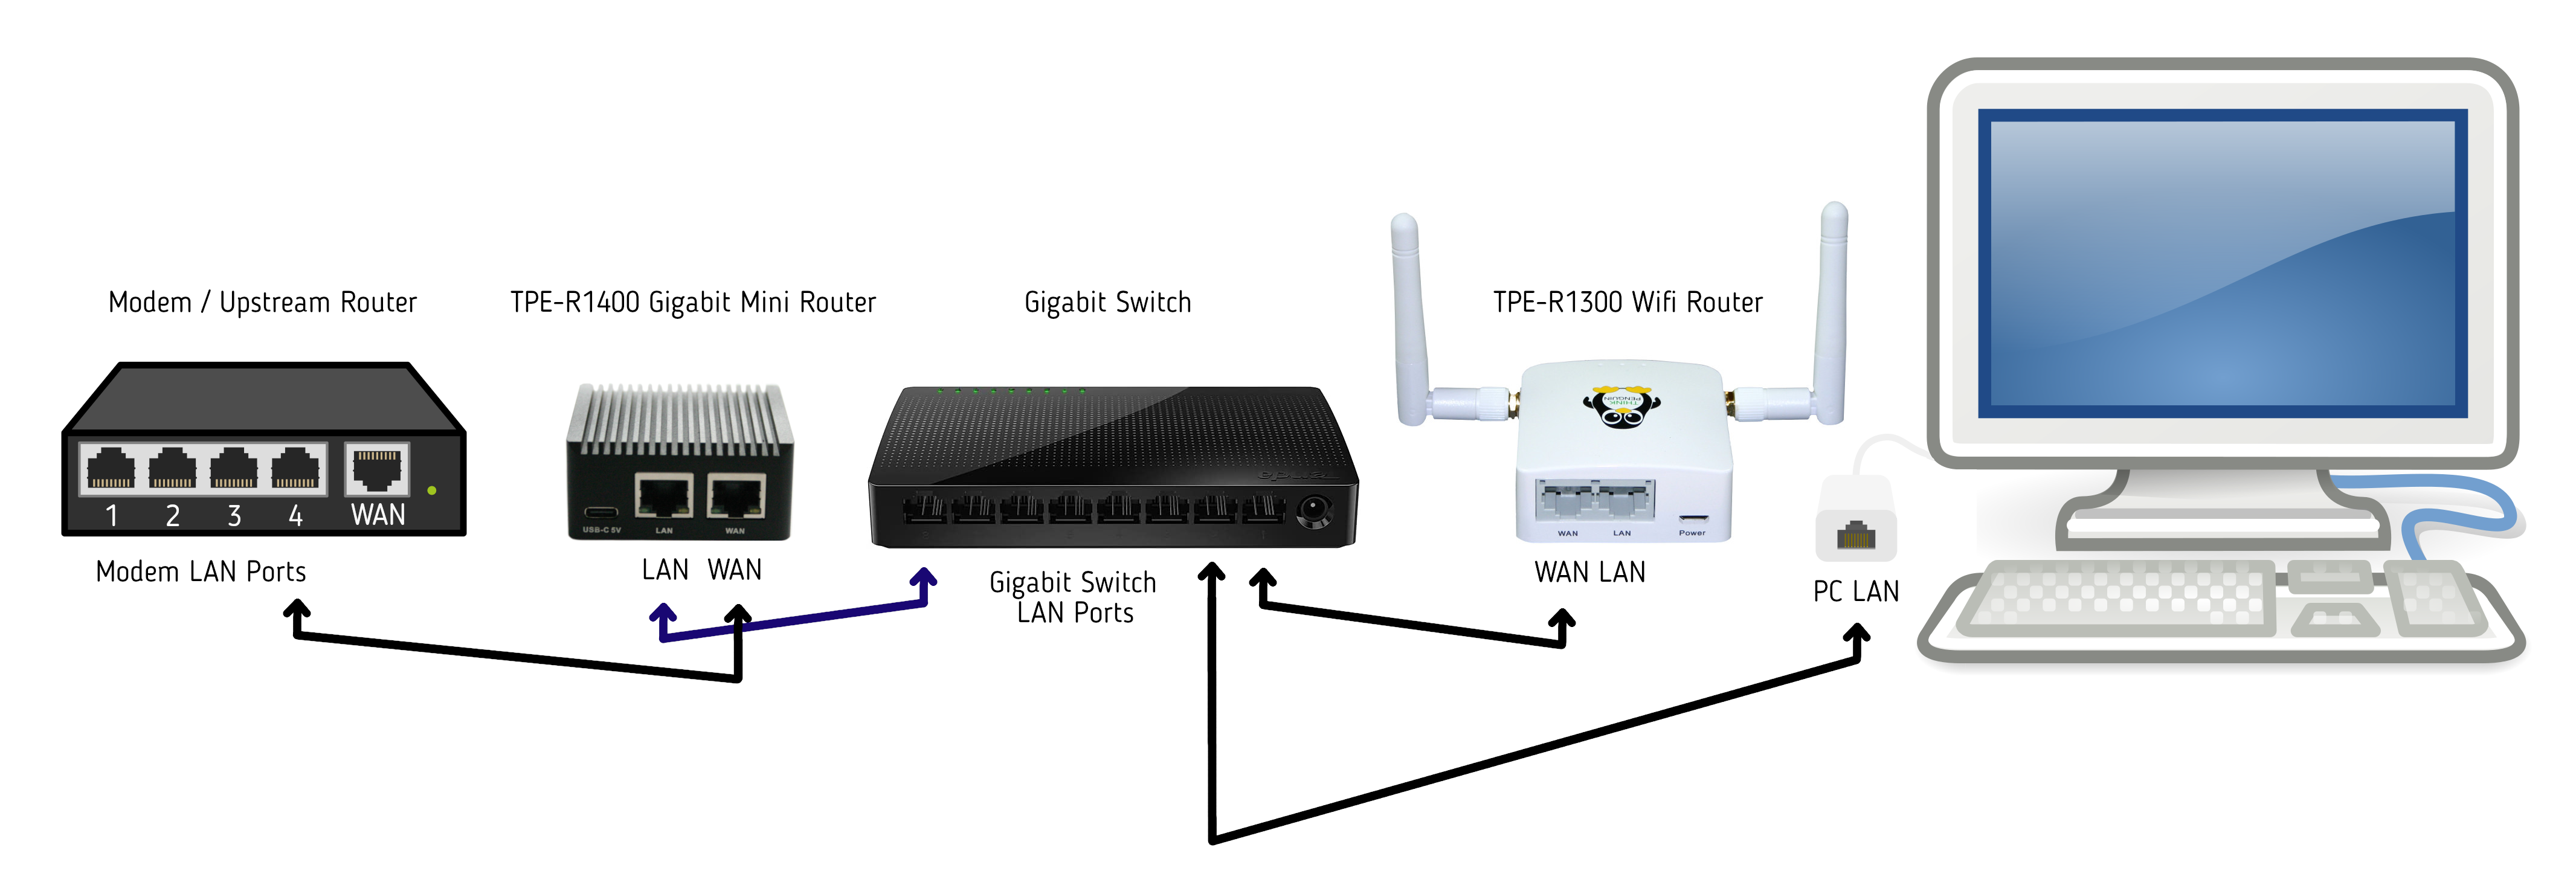 Free Software Gigabit Mini VPN Router (TPE-R1400) | ThinkPenguin.com